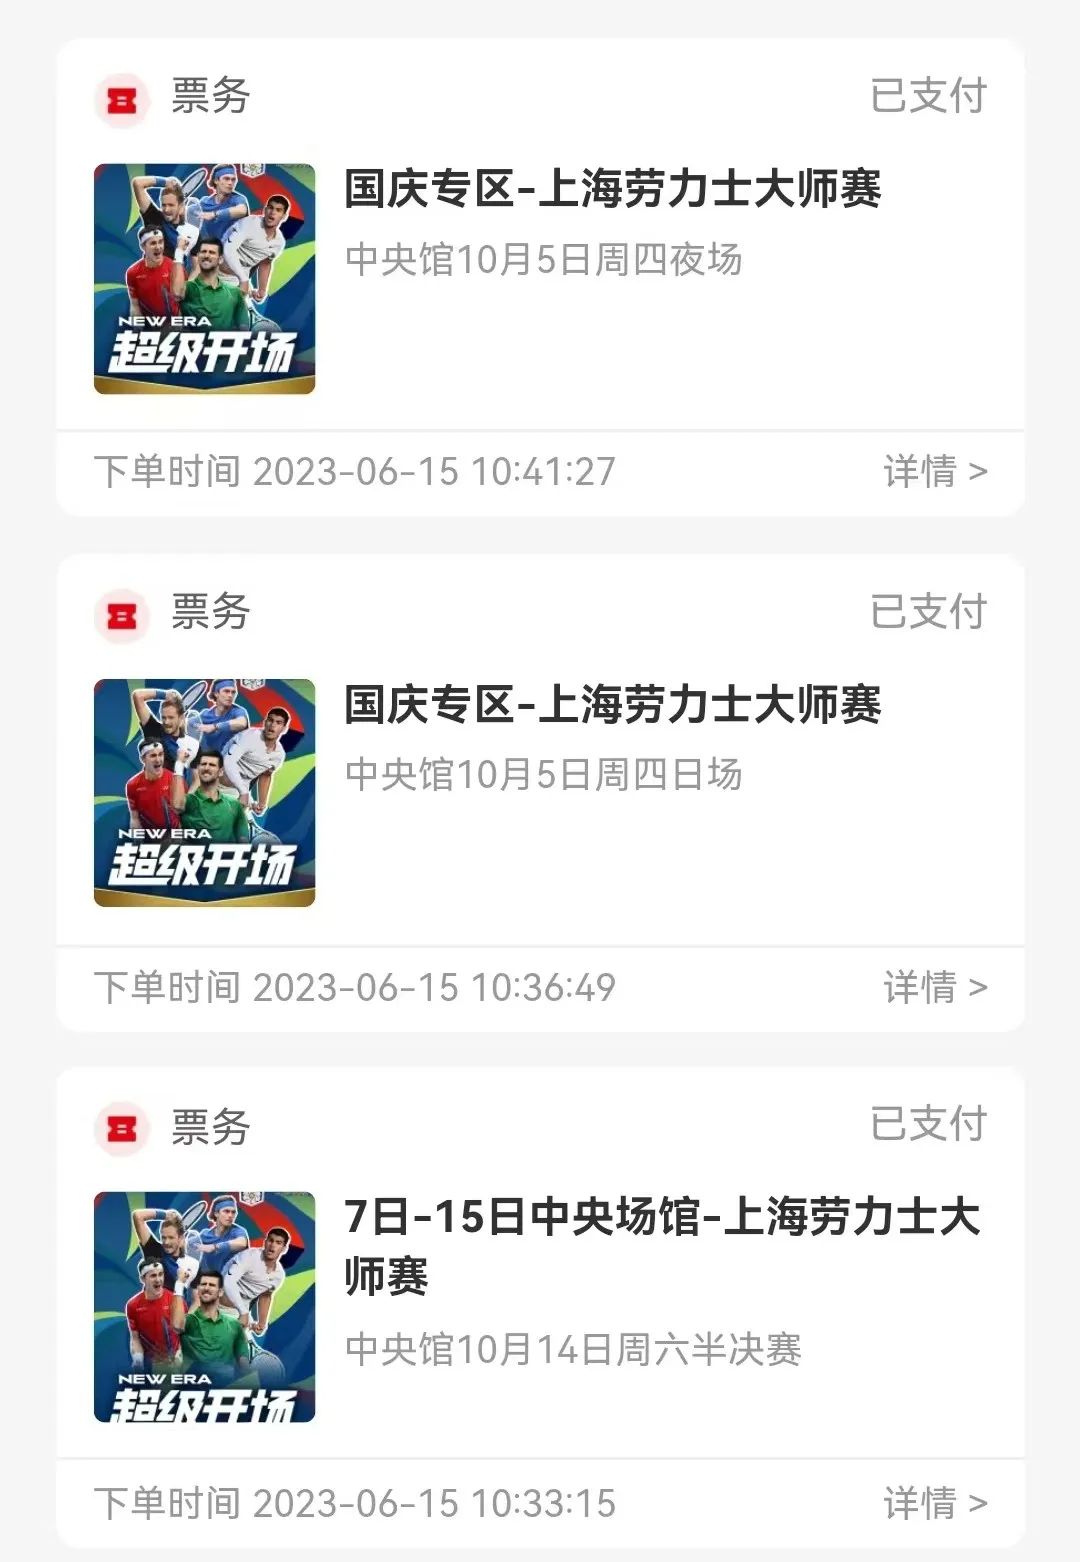 本文图片均为“上海新闻广播”微信公众号 图